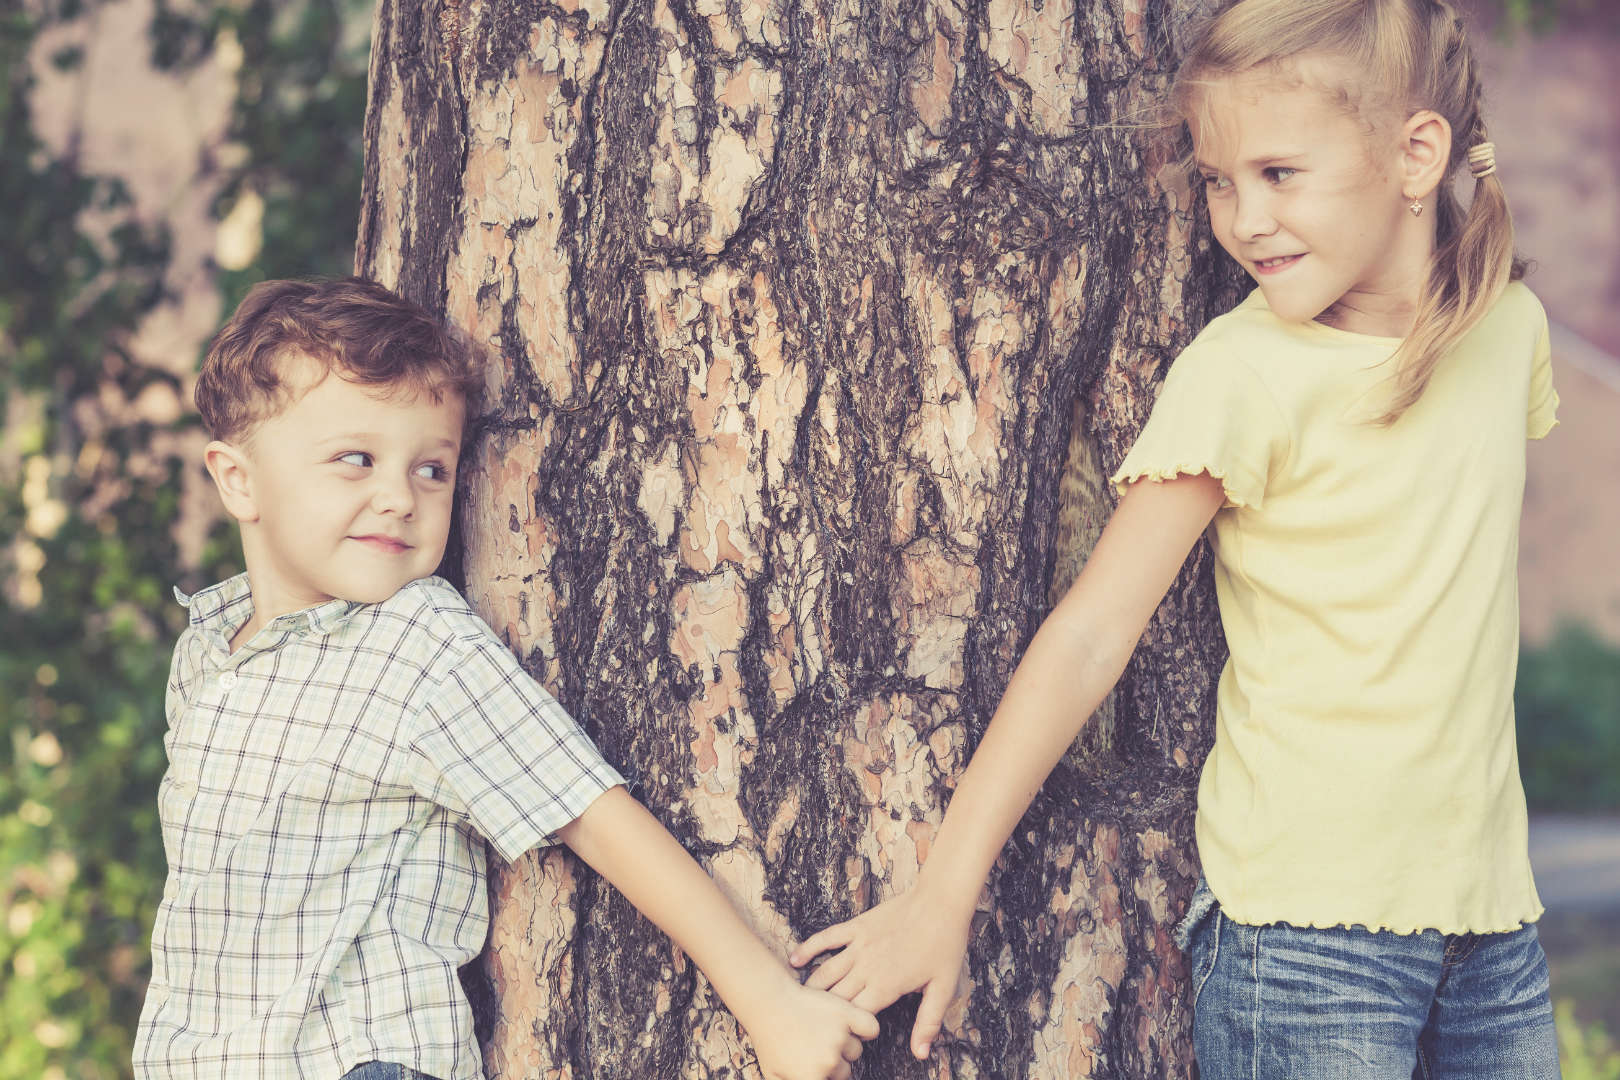 როგორ უნდა შეუწყოთ ხელი დებსა და ძმებს შორის მეგობრობას - რჩევები მშობლებს